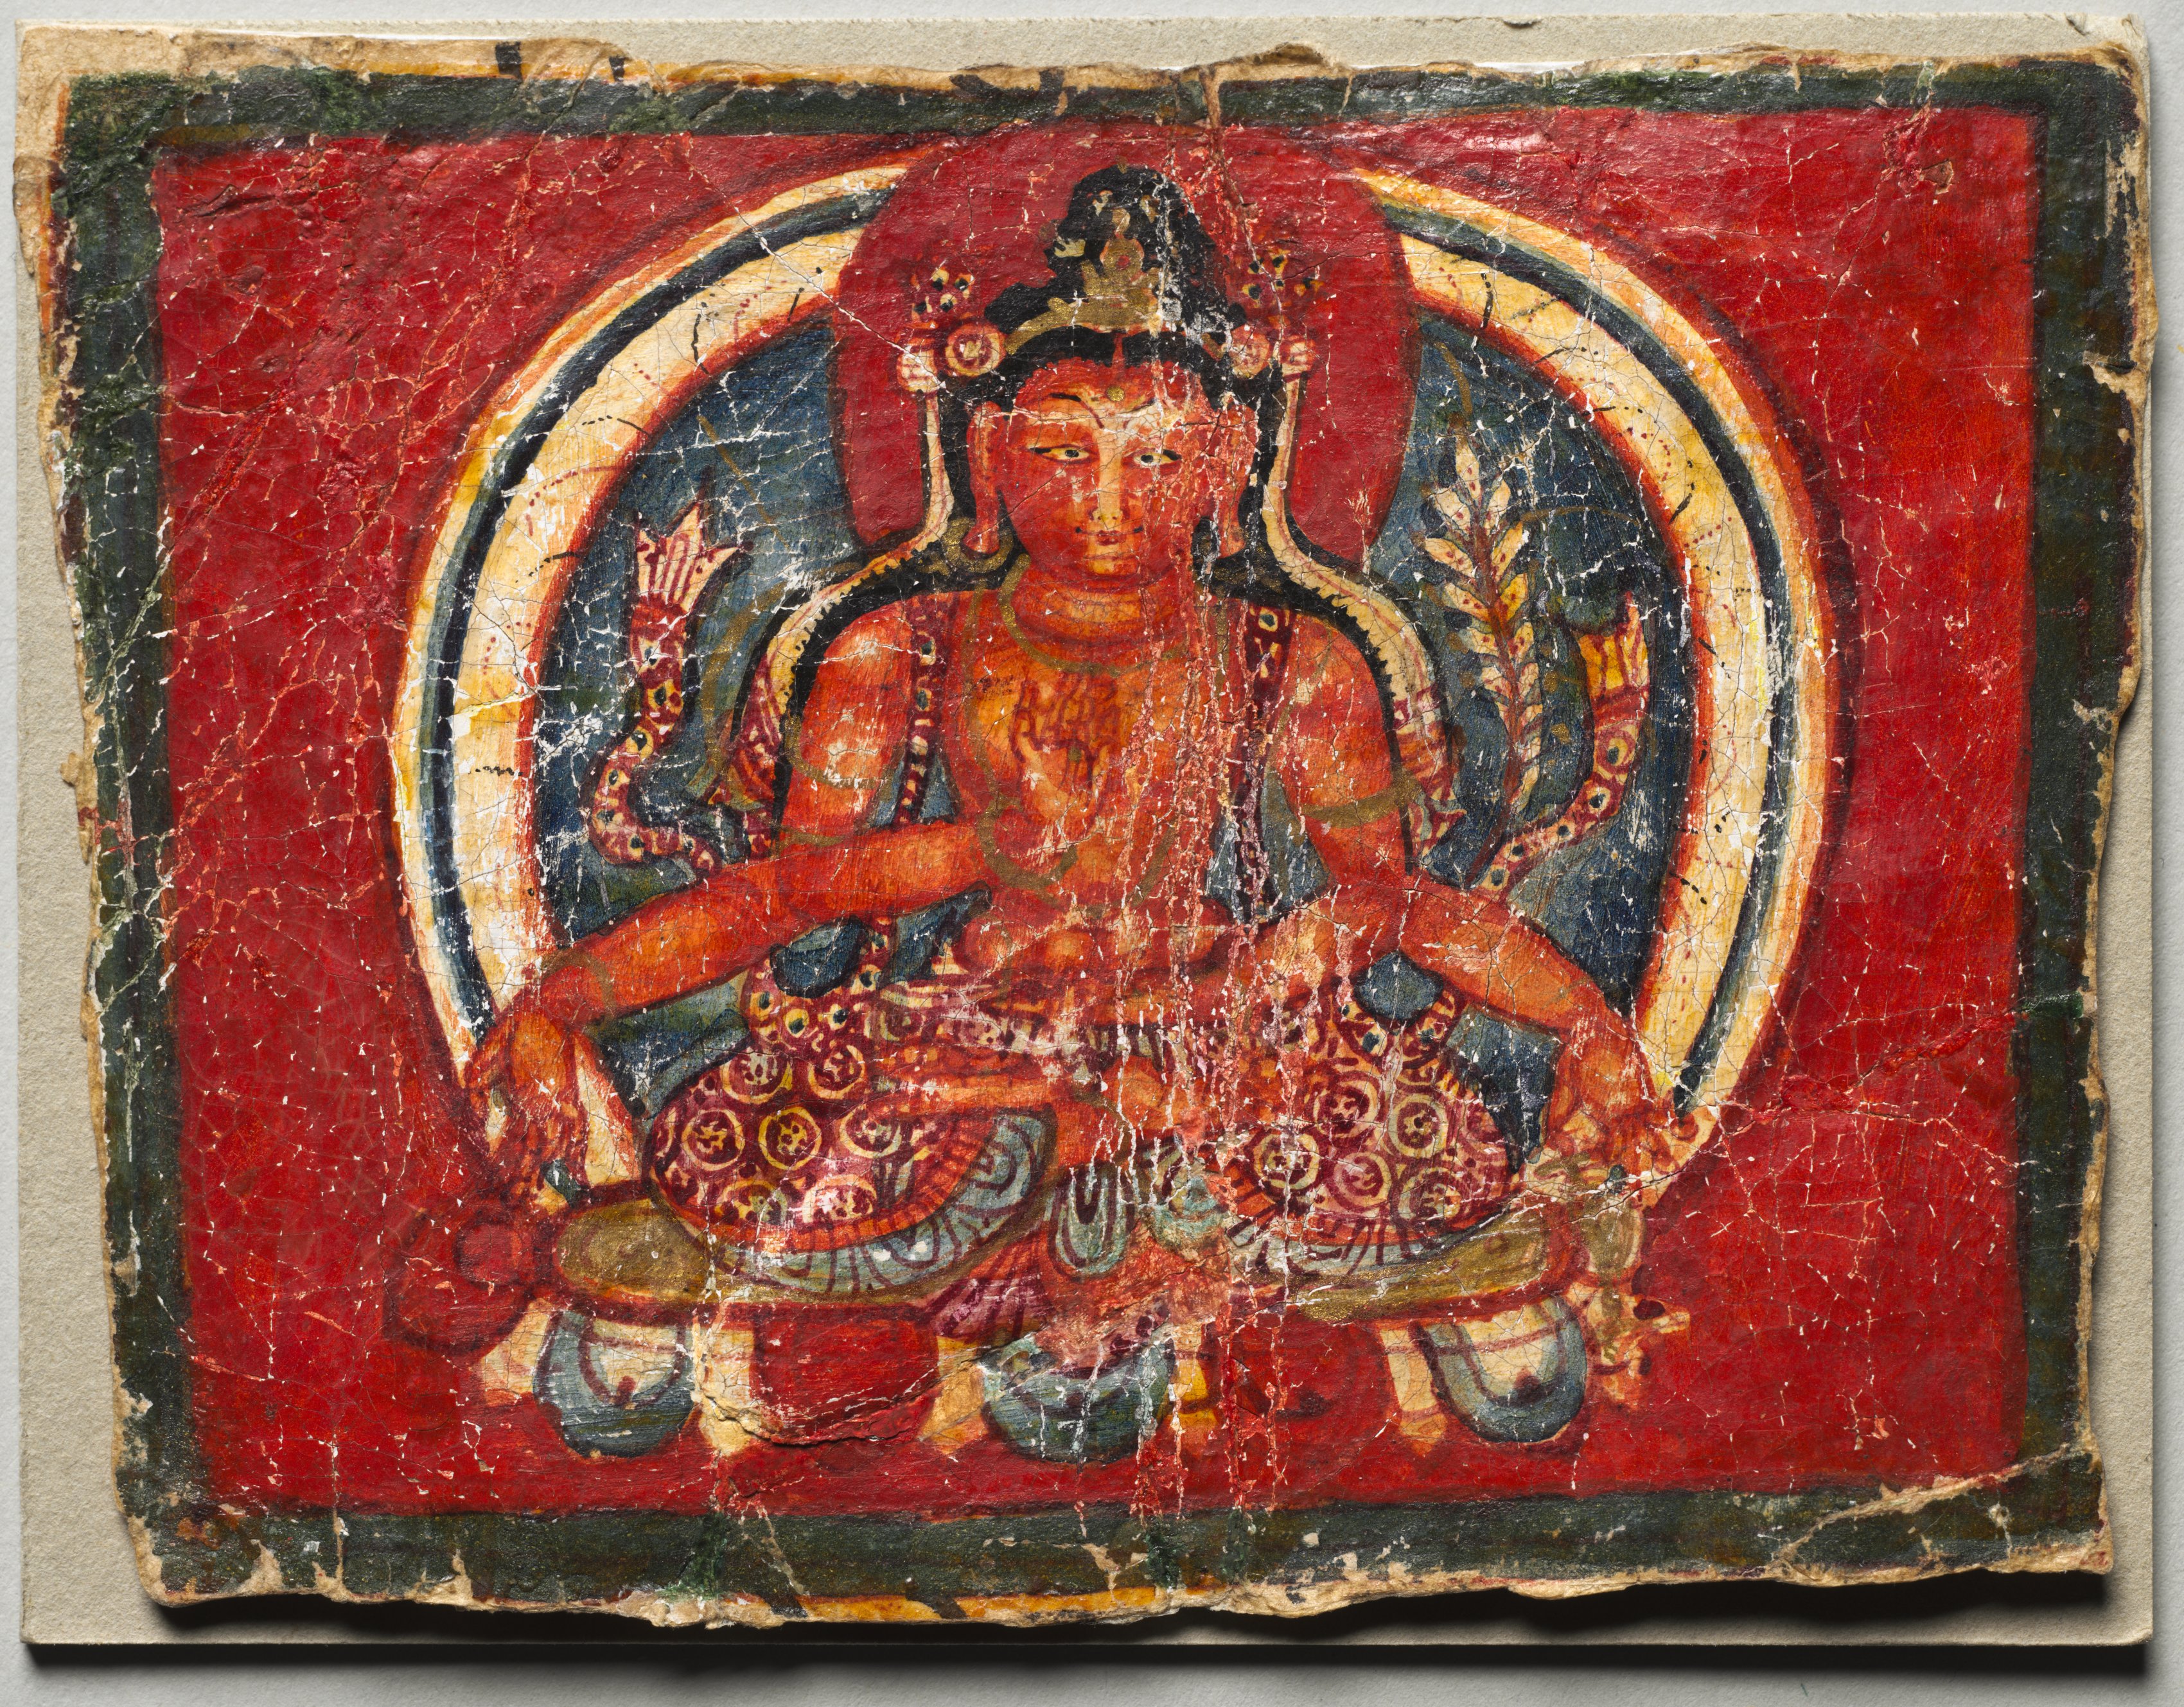 Four-armed Maitreya